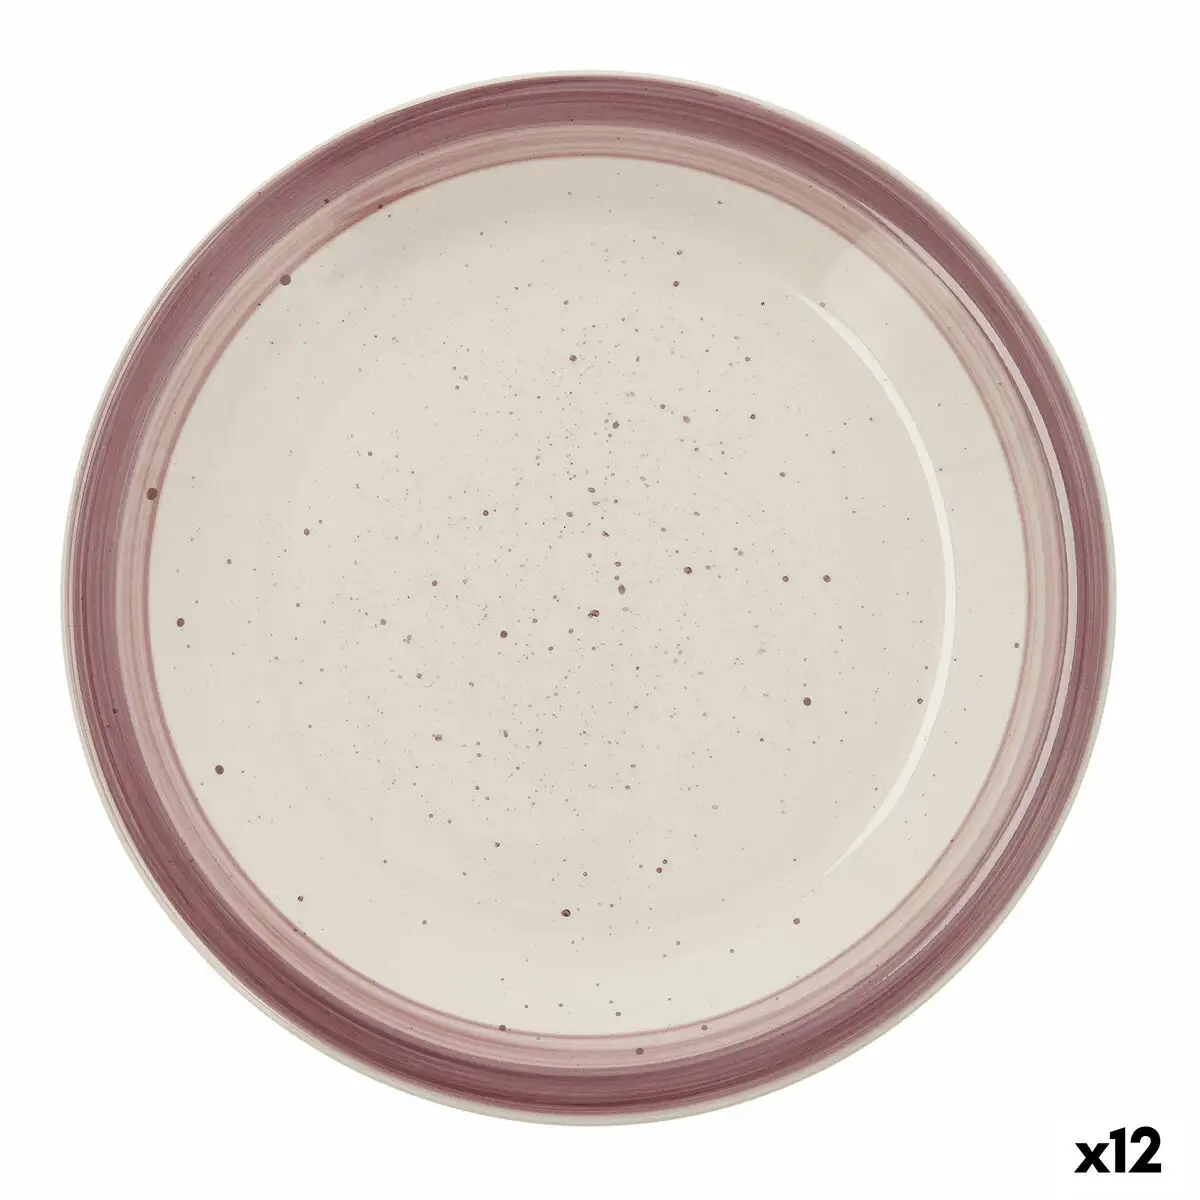 Assiette plate quid allegra peoni ceramique bicolore o 27 cm 12 unites _7144. Découvrez DIAYTAR SENEGAL - Là où Votre Shopping Prend Vie. Plongez dans notre vaste sélection et trouvez des produits qui ajoutent une touche spéciale à votre quotidien.